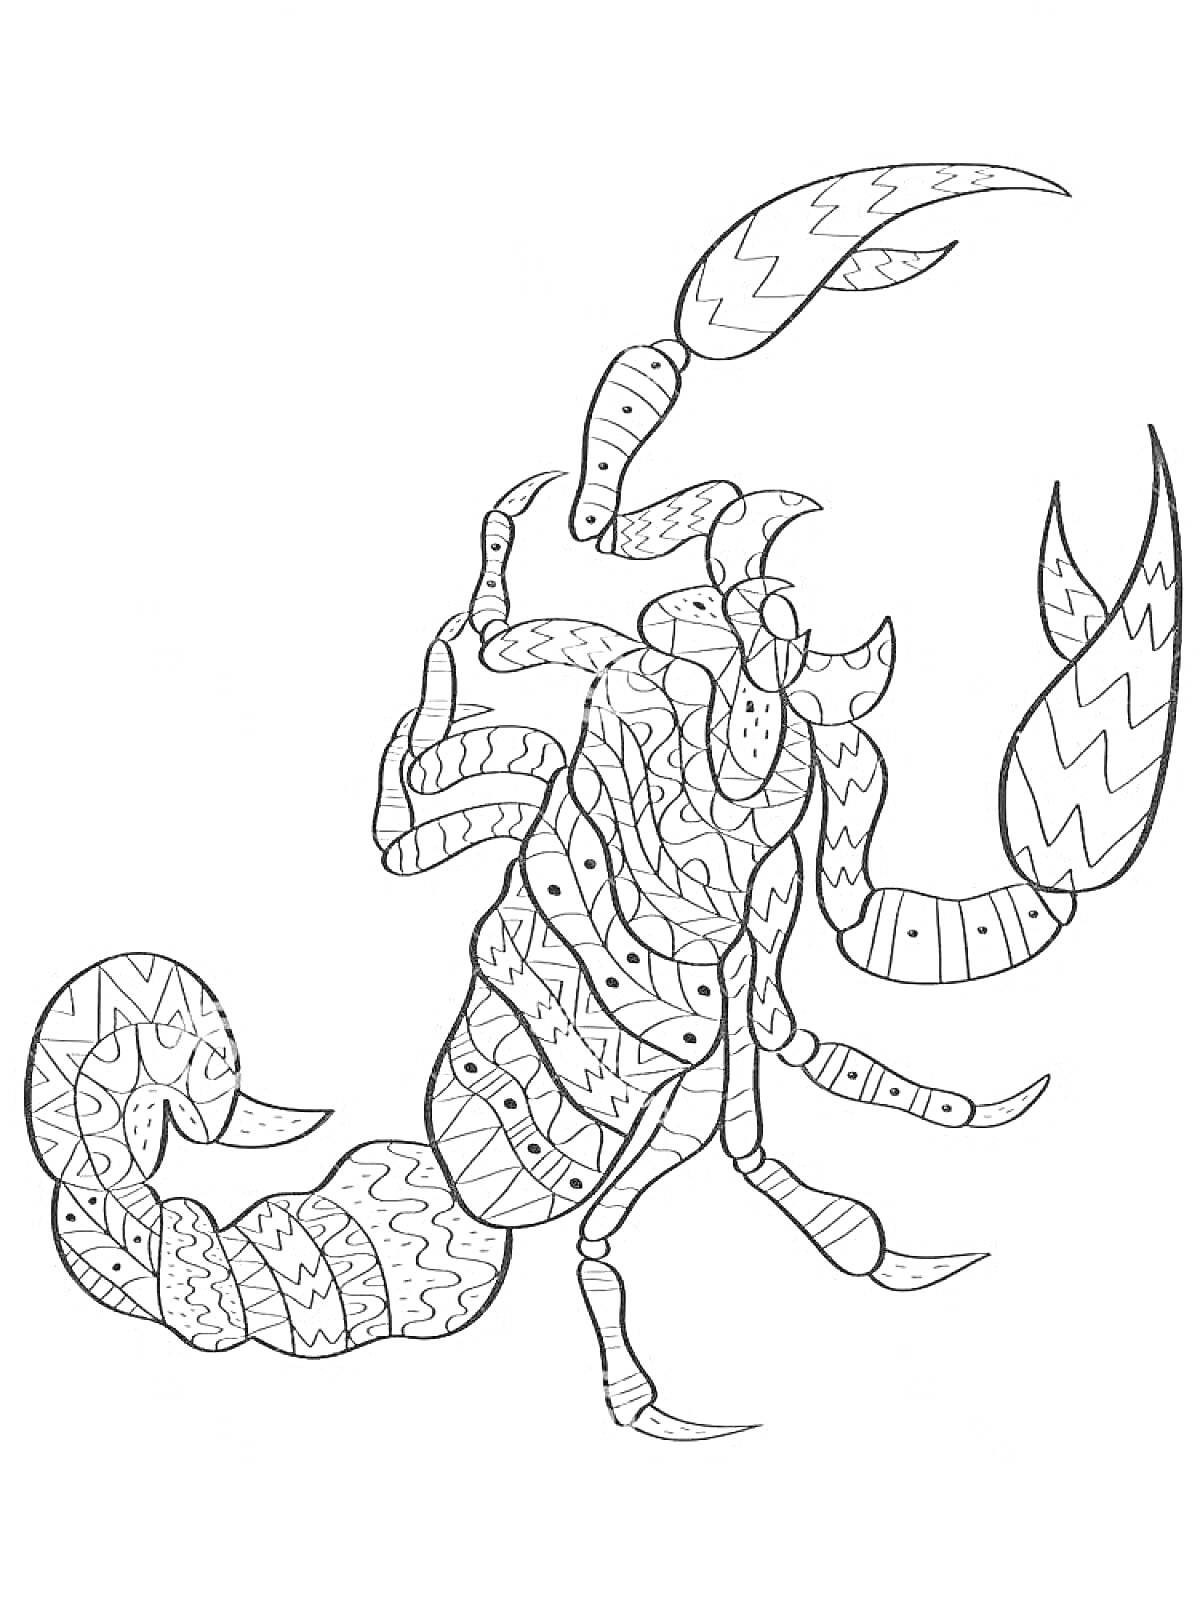 Раскраска Скорпион с узорами, включающими зигзаги и волнистые линии на теле, клешнях и хвосте.